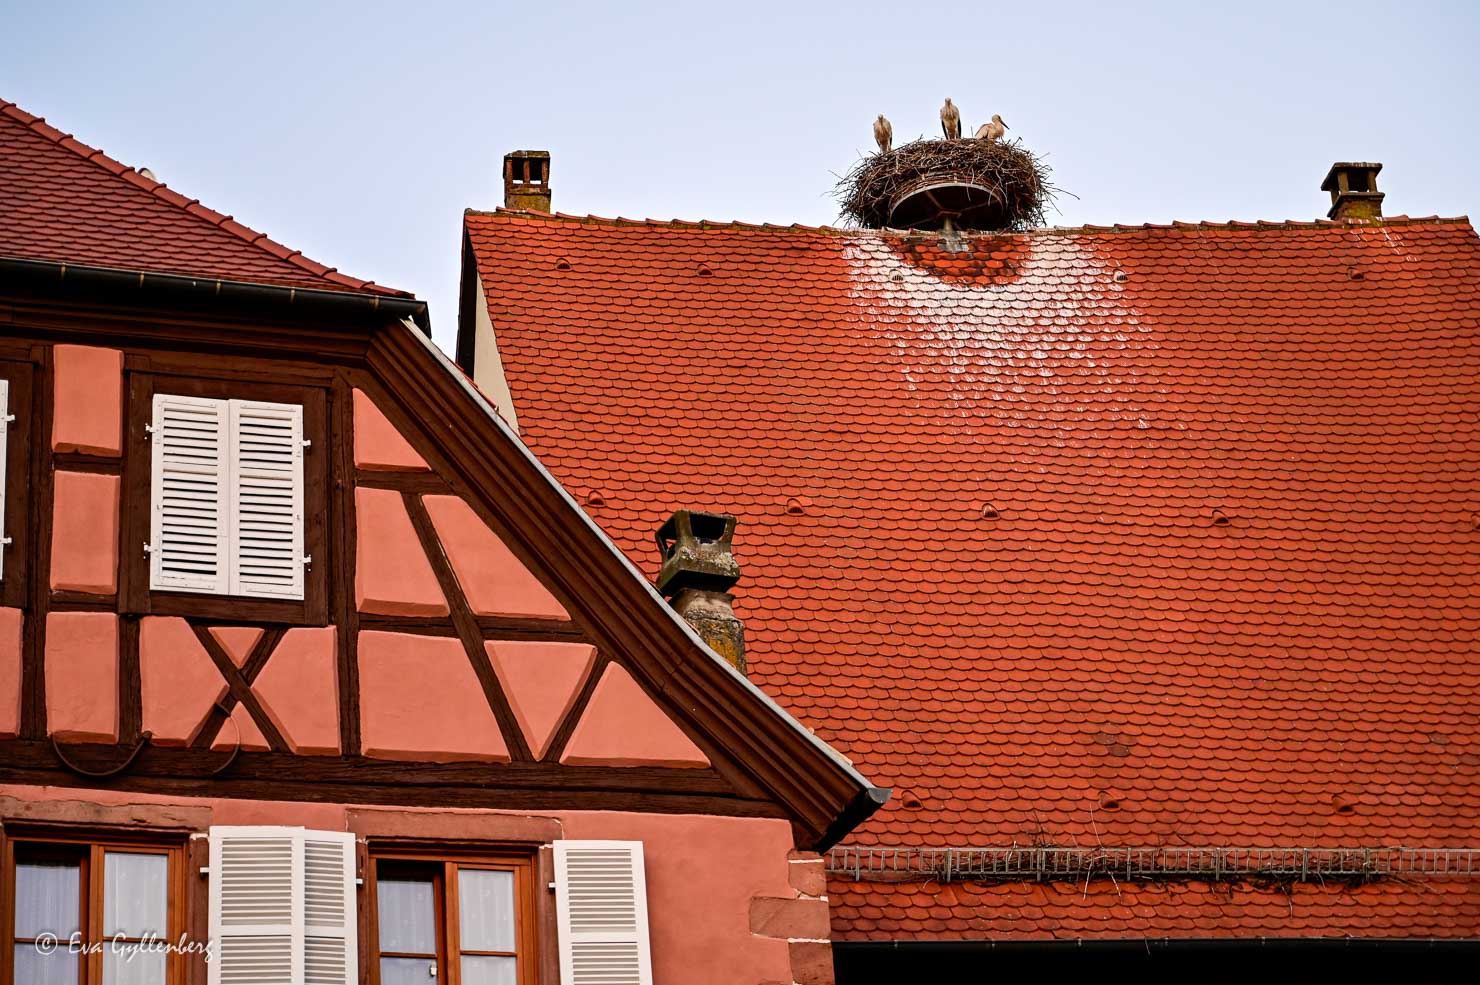 Storkar på tegeltak i Alsace